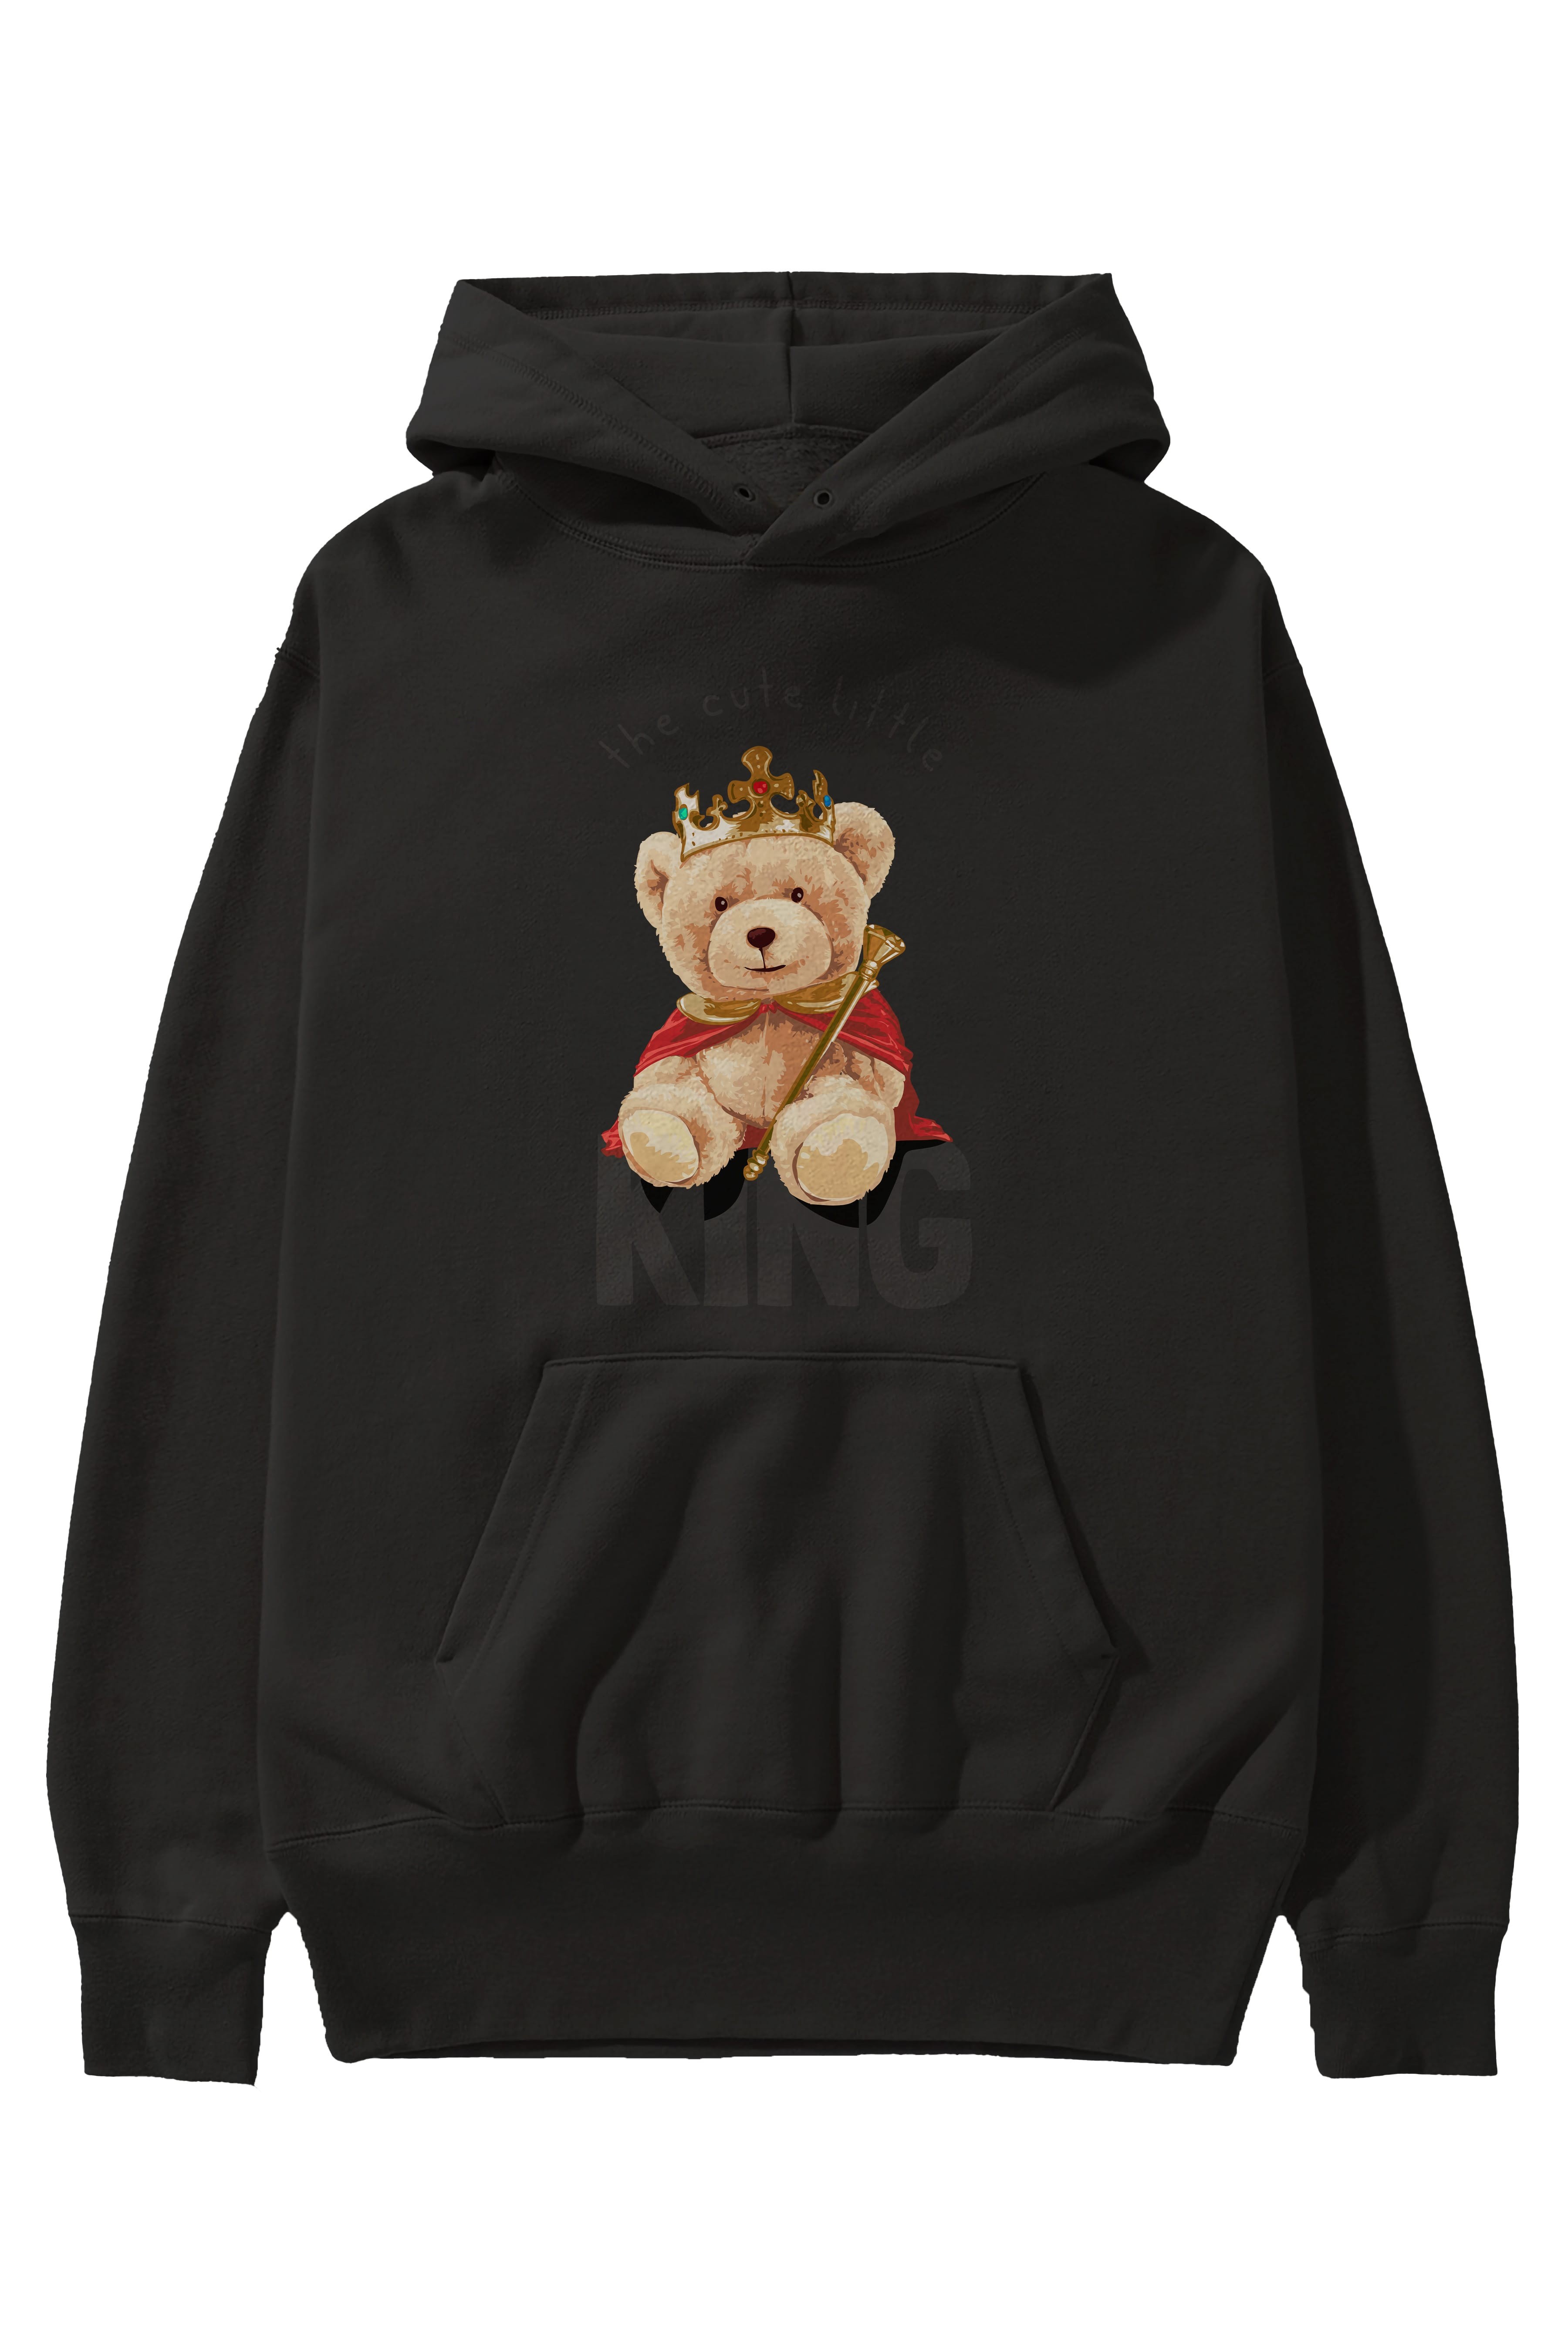 Teddy Bear King Ön Baskılı Hoodie Oversize Kapüşonlu Sweatshirt Erkek Kadın Unisex